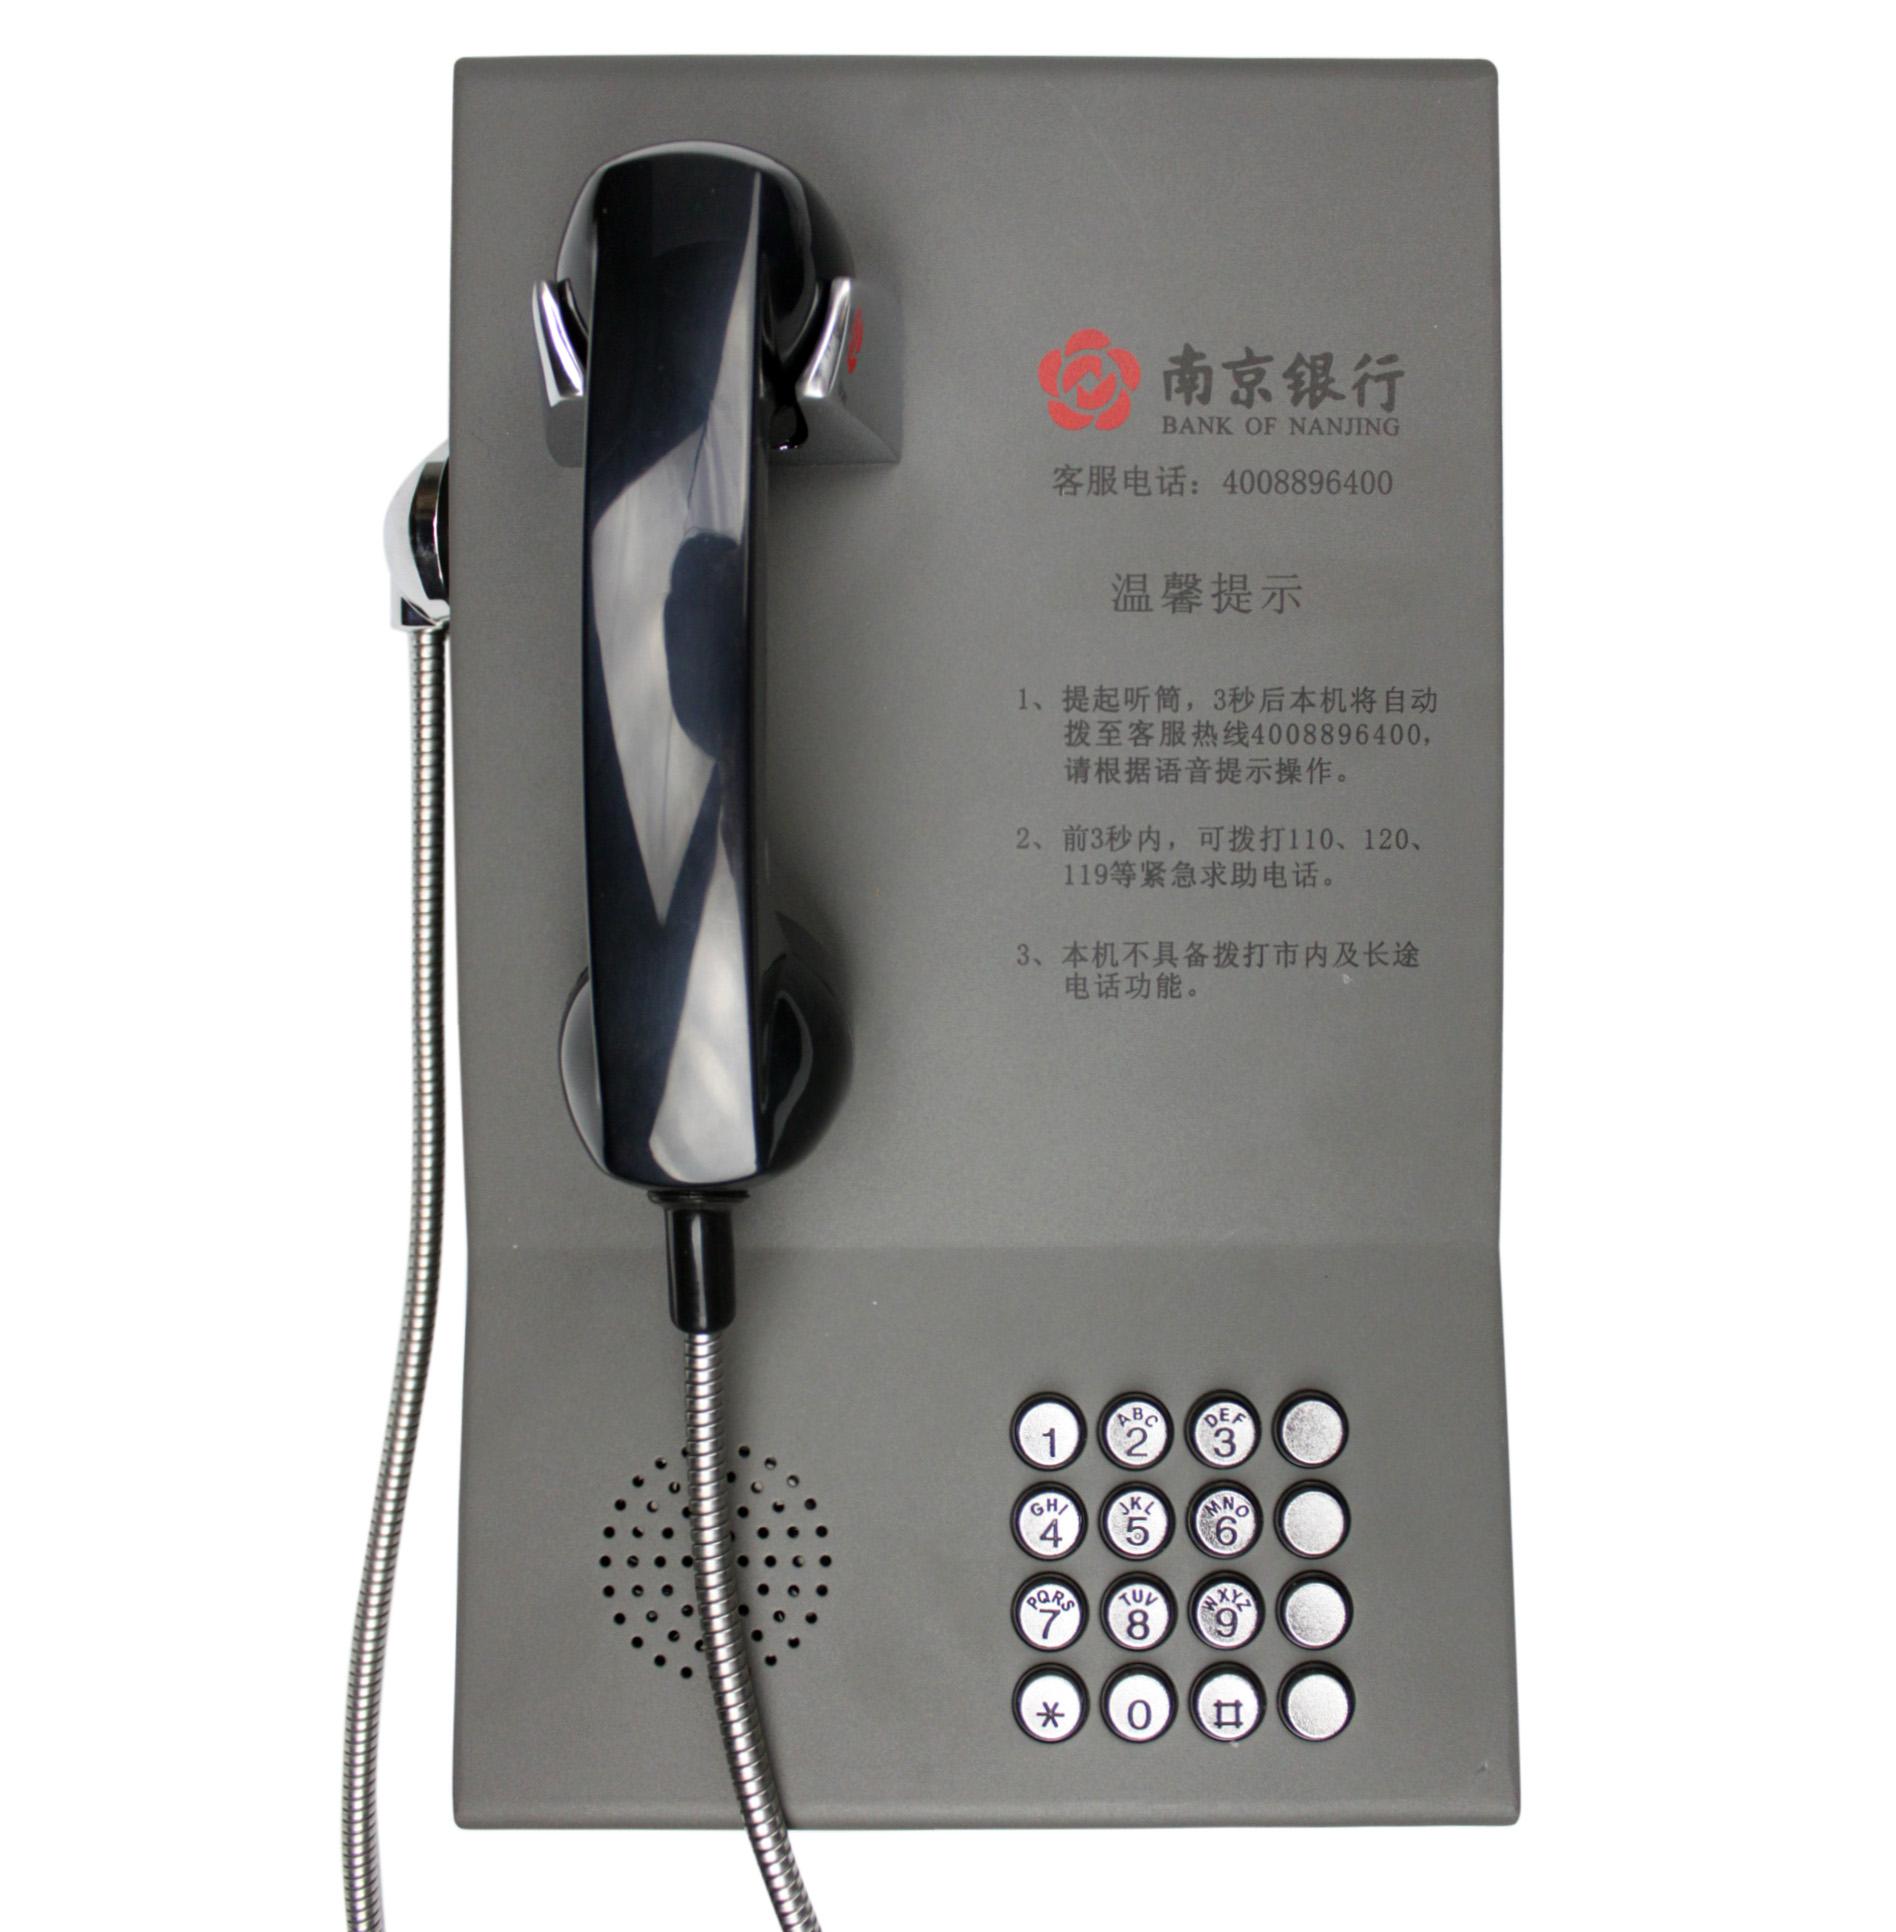 农村商业银行客服电话机，农商行银行**电话机，KNZD-23摘机自动拨号功能